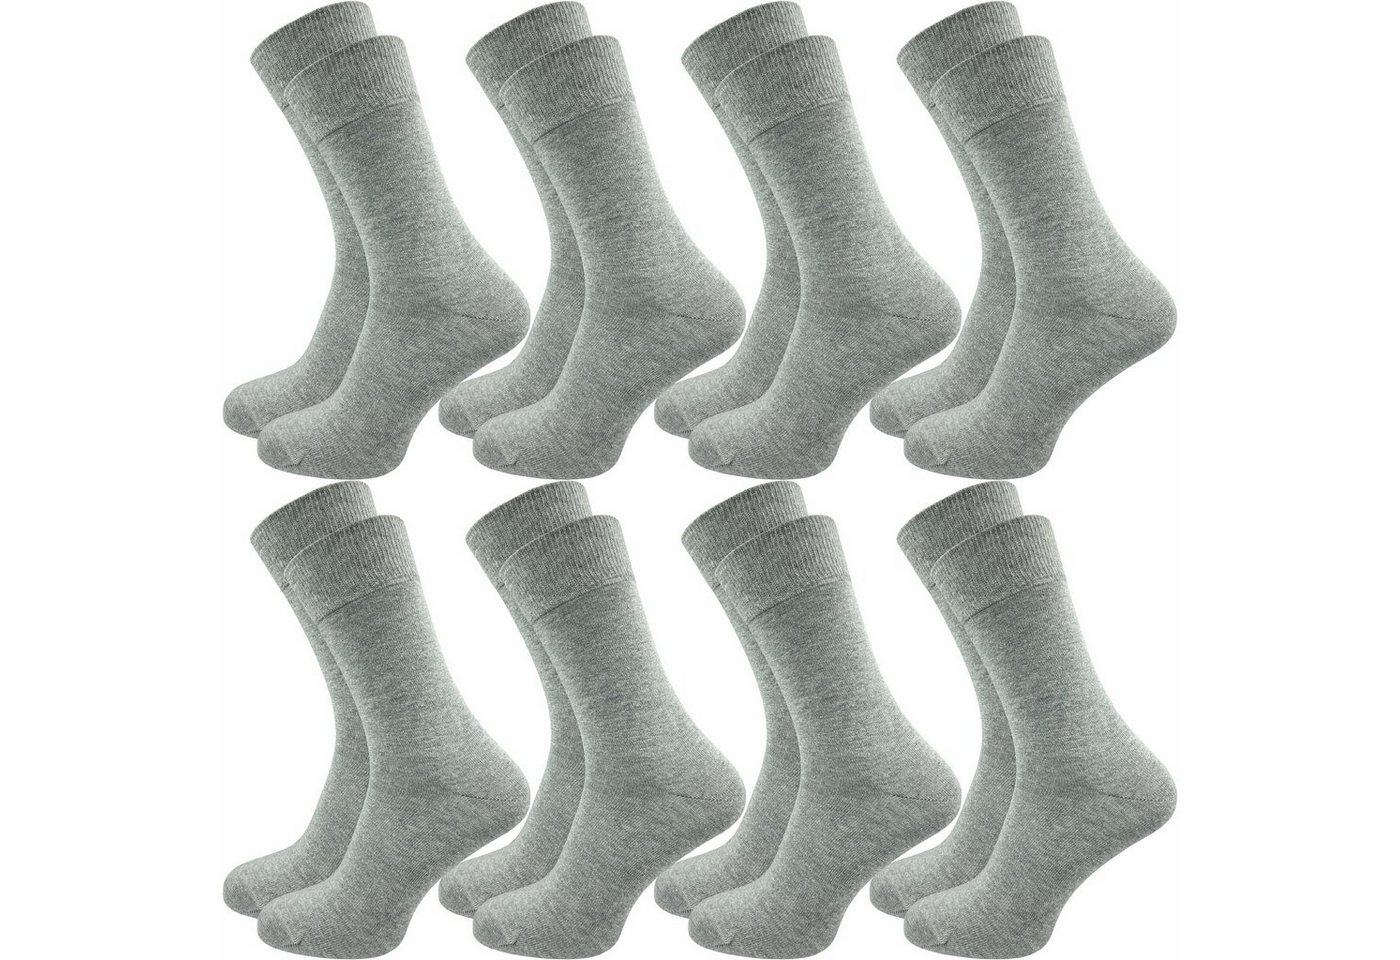 GAWILO Socken für Herren aus 100% Baumwolle - Ohne drückende Naht - mit Komfortbund (8 Paar) in schwarz, grau, blau, weiß & natur - mit handgekettelter Zehenspitze von GAWILO